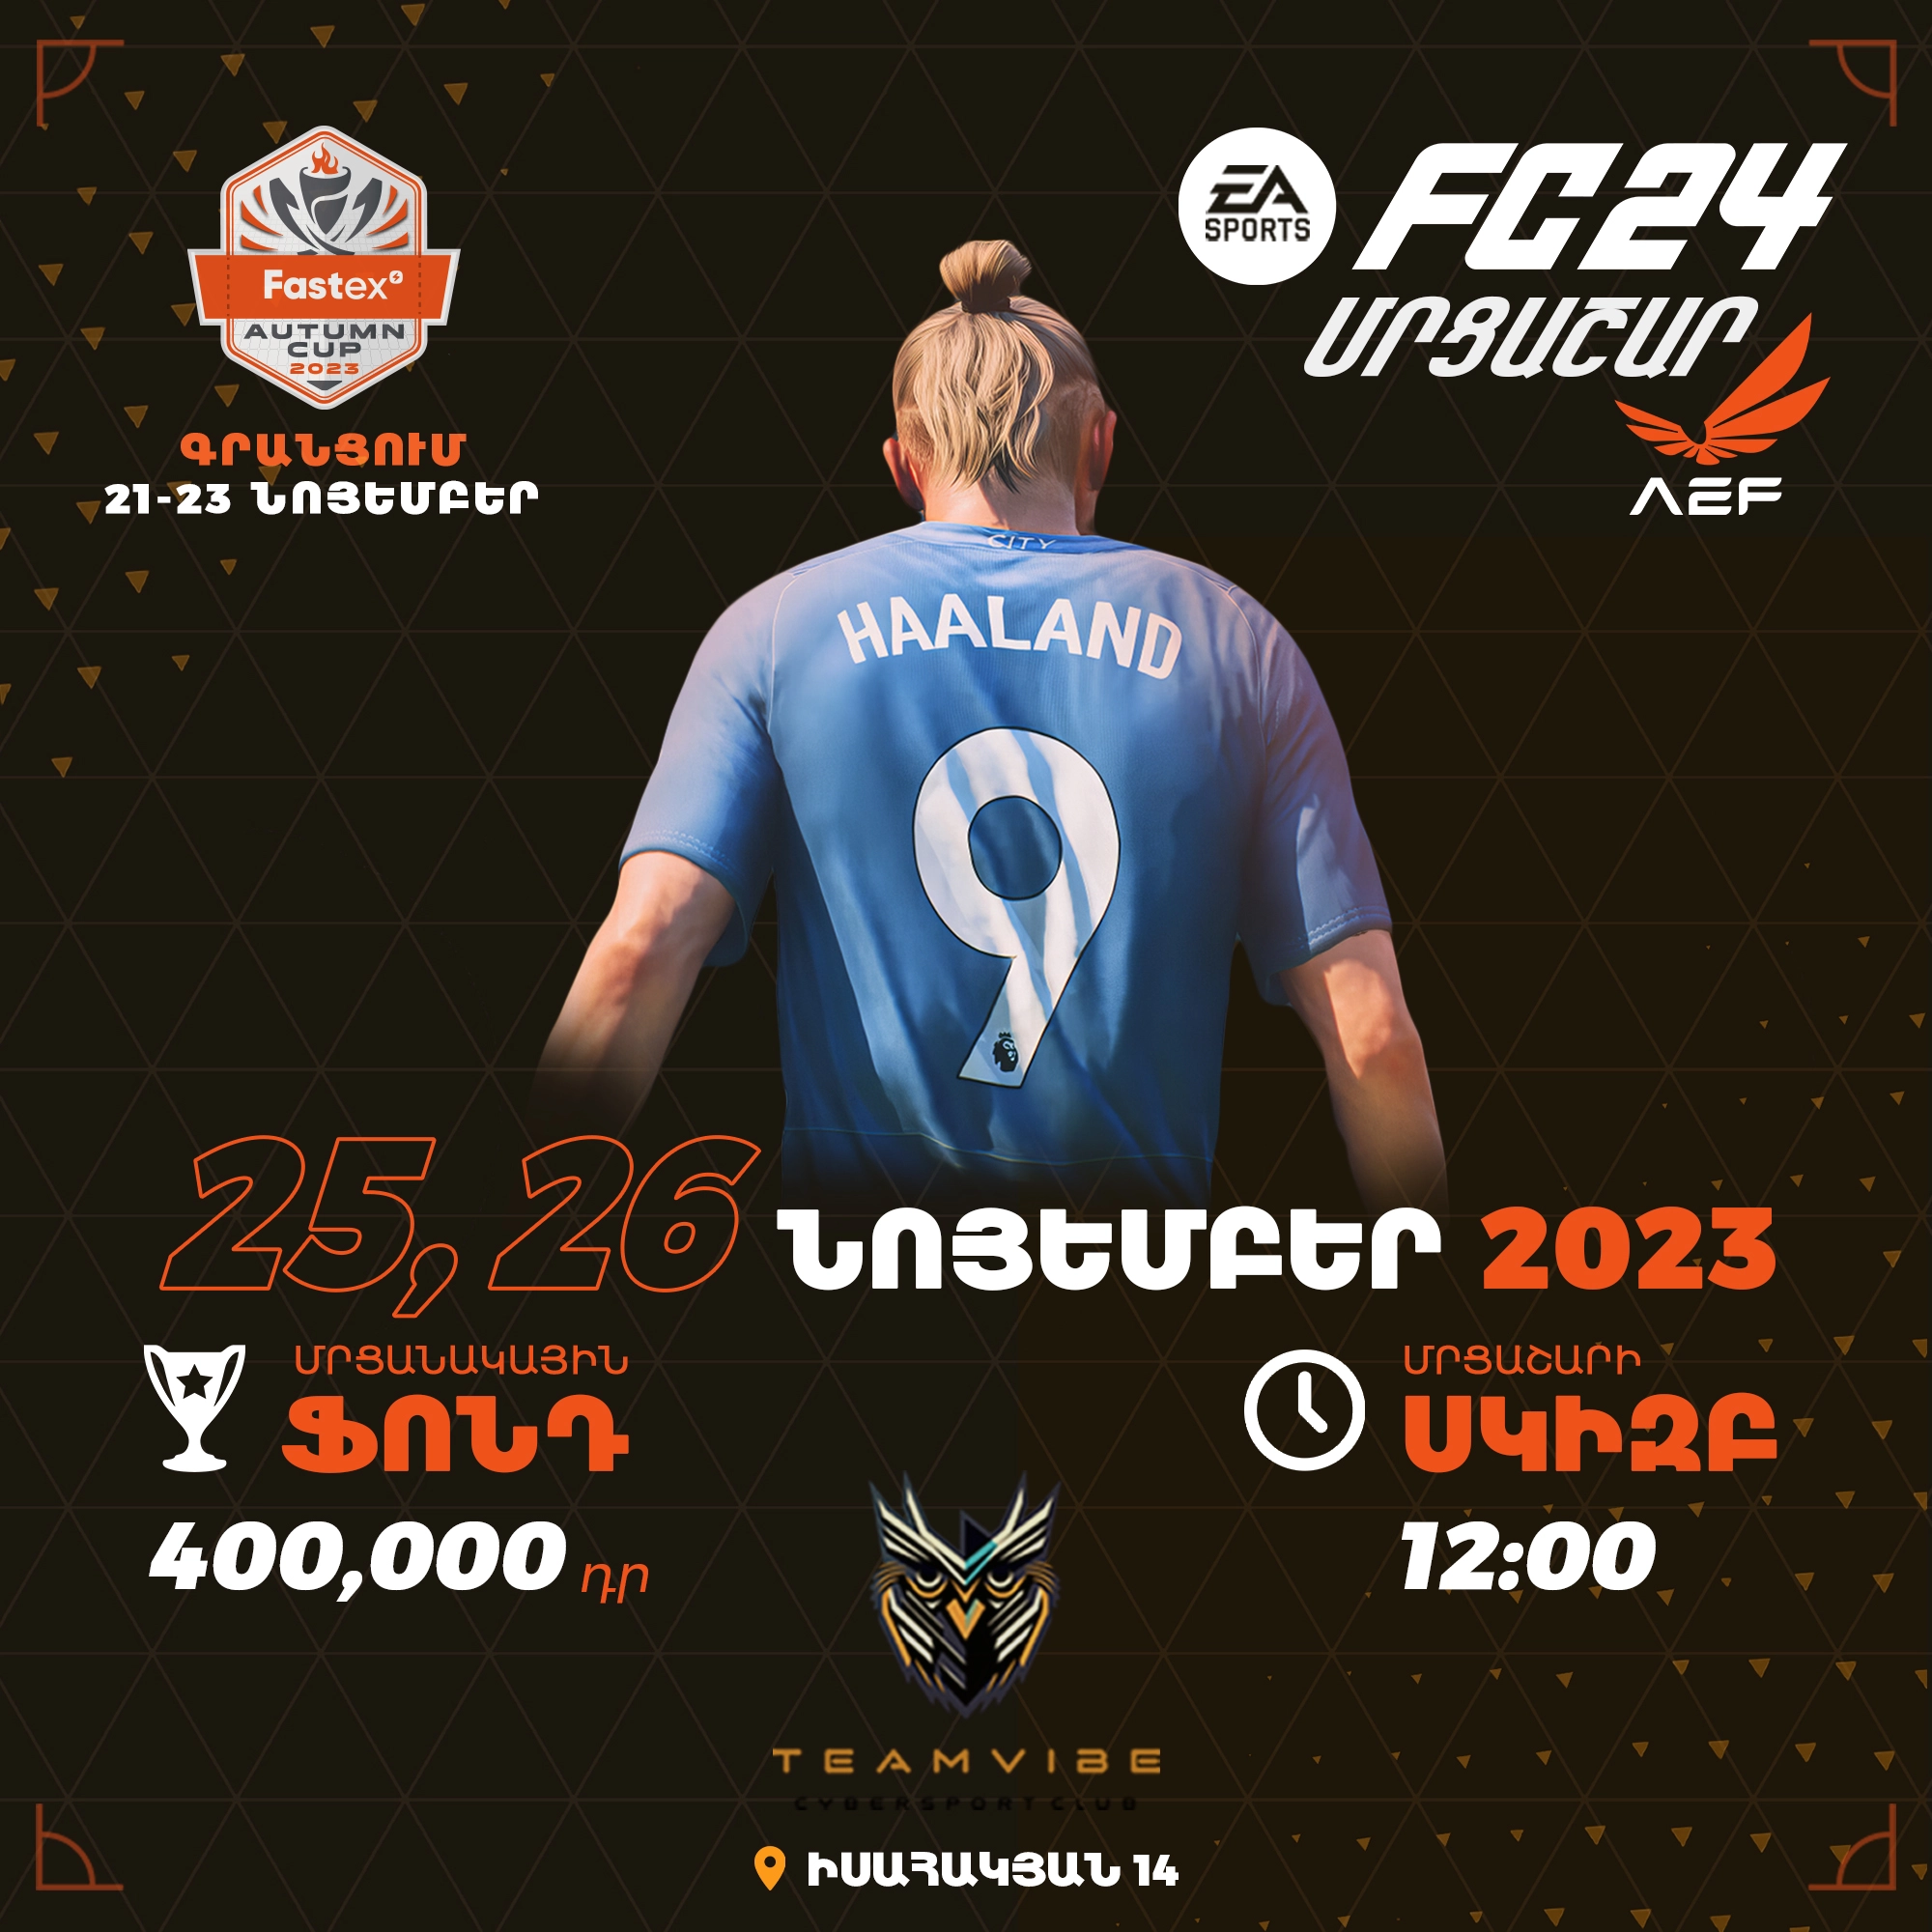 FC 24 FASTEX AUTUMN CUP 2023 ԱՇՆԱՆԱՅԻՆ ԳԱՎԱԹ 2023